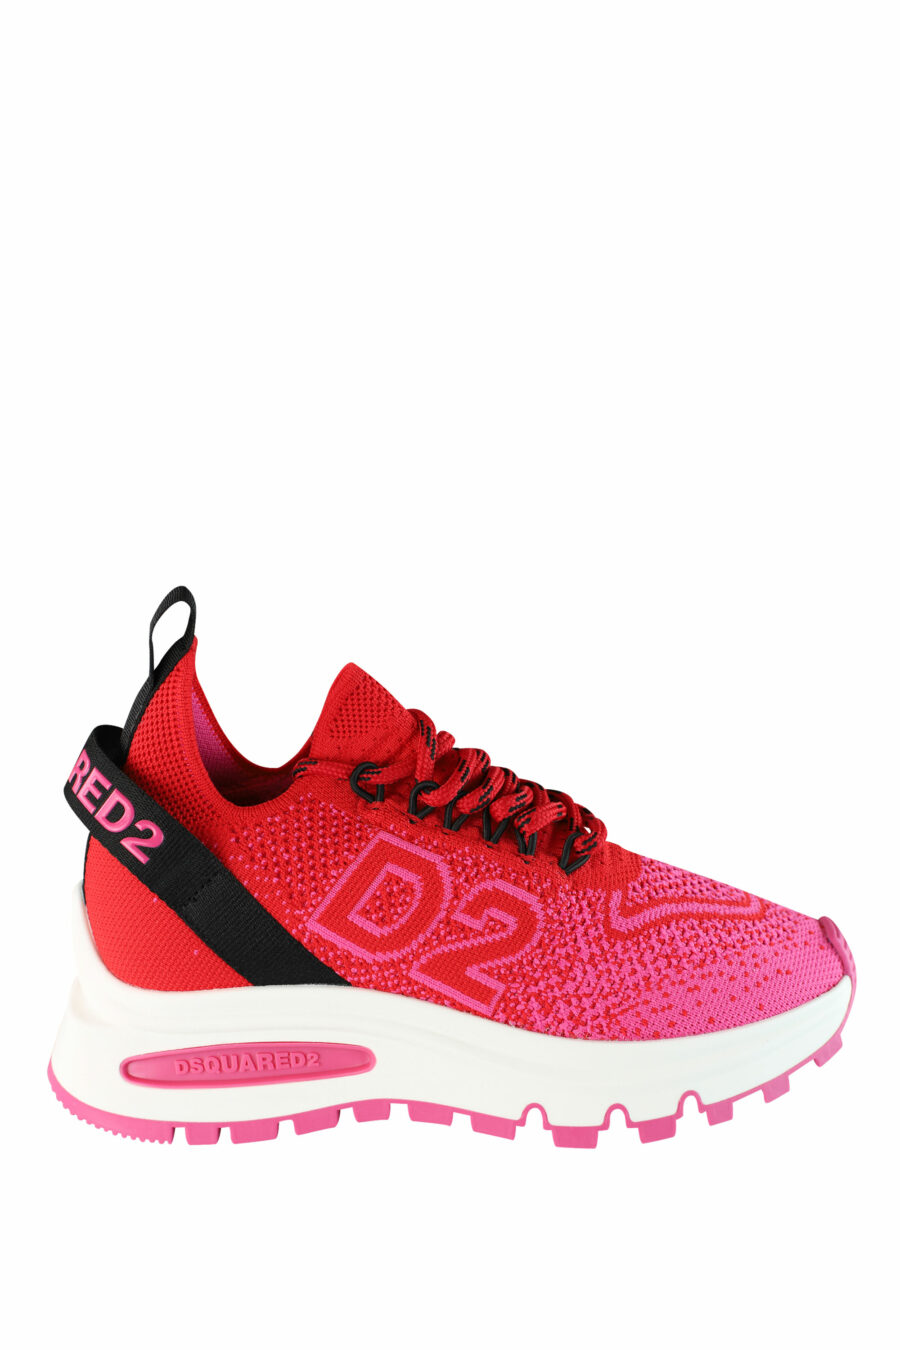 Zapatillas rojas y fucsia "Run D2" - IMG 1467